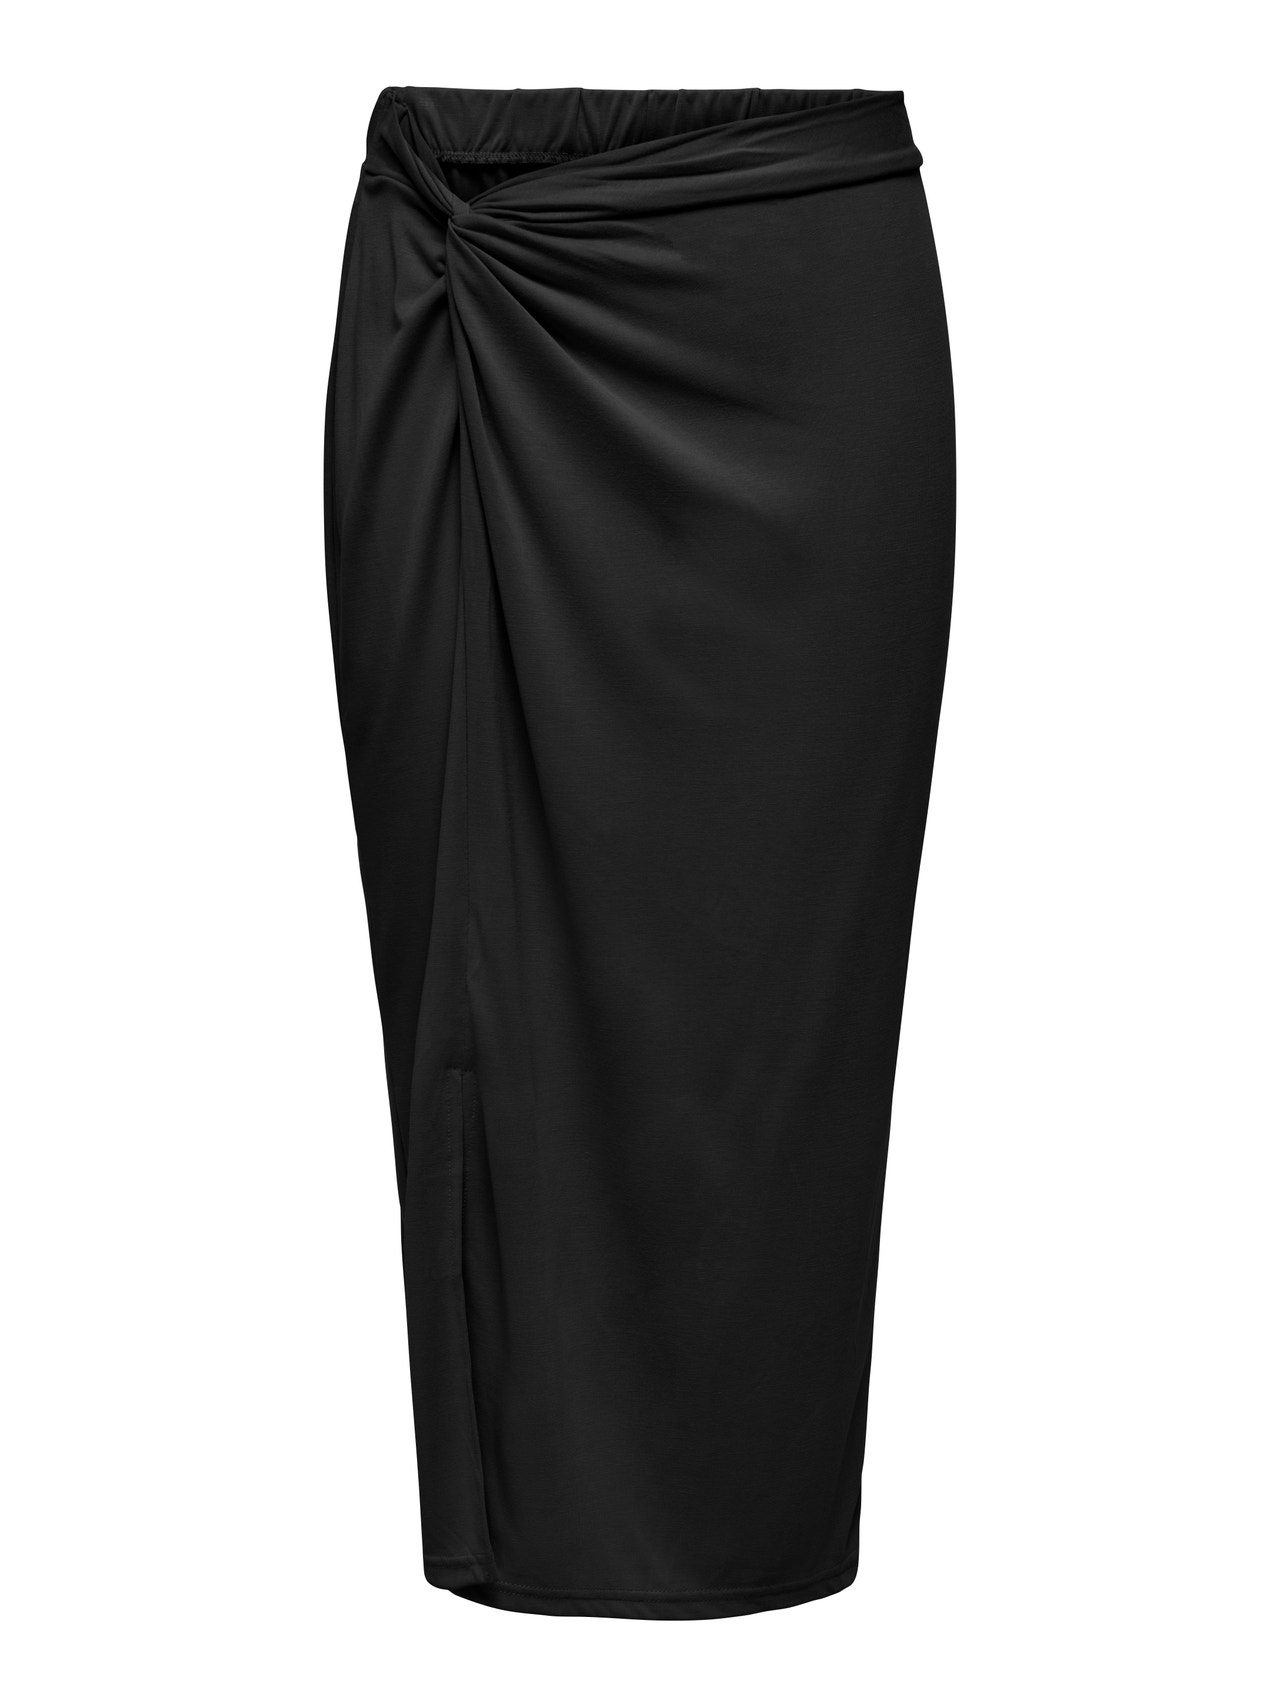 ONLY Midi Skirt With Slit -Black - 15289883